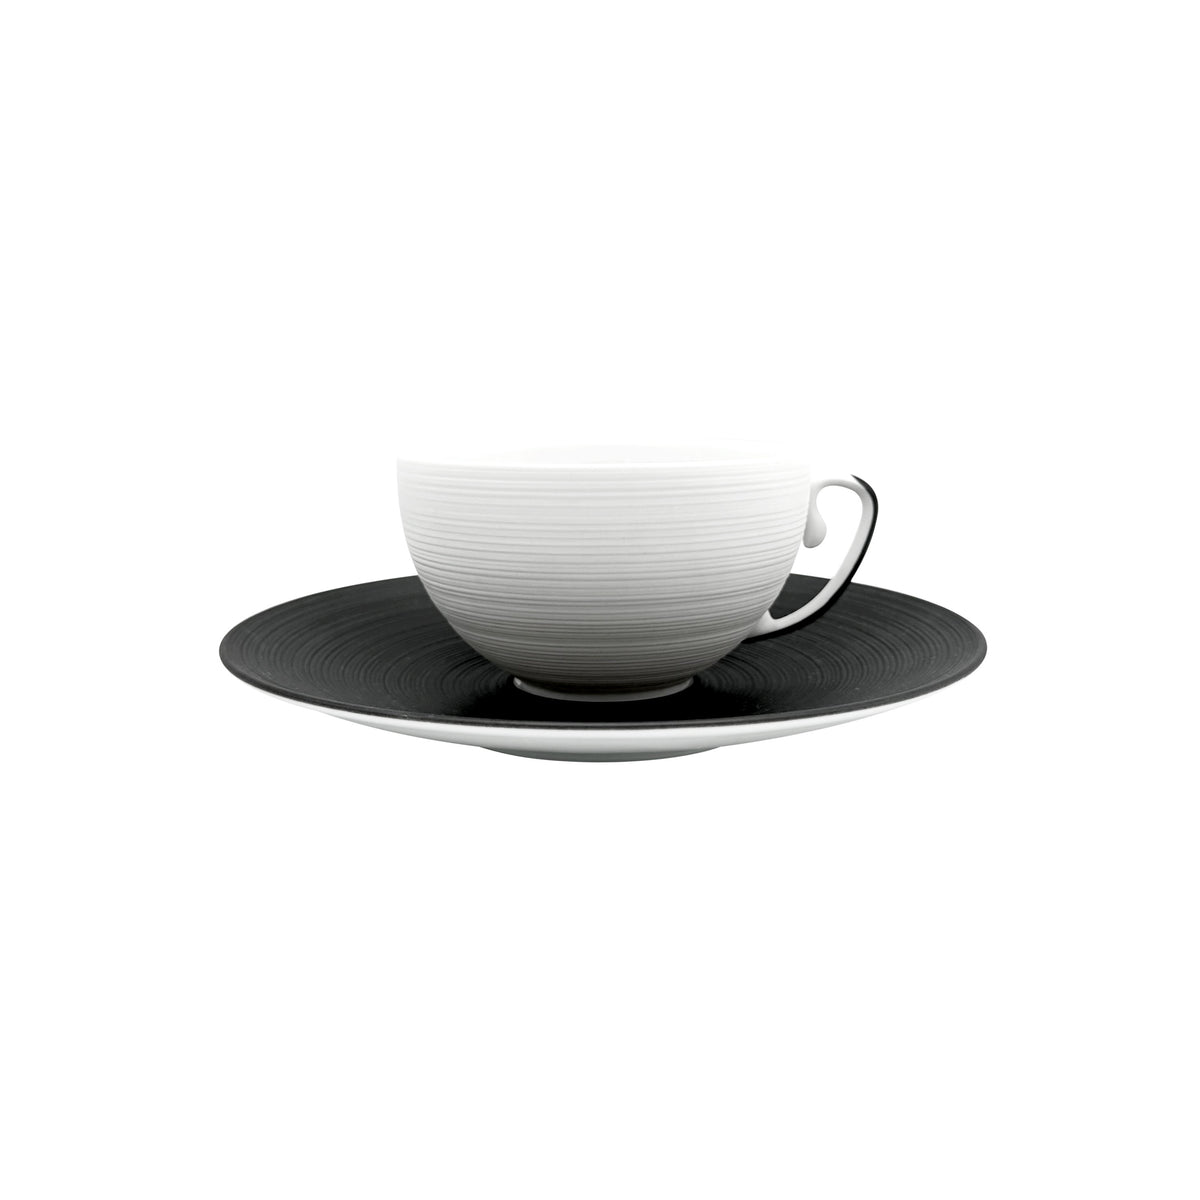 HEMISPHERE Black Bakelite - Tea set (cup & saucer)